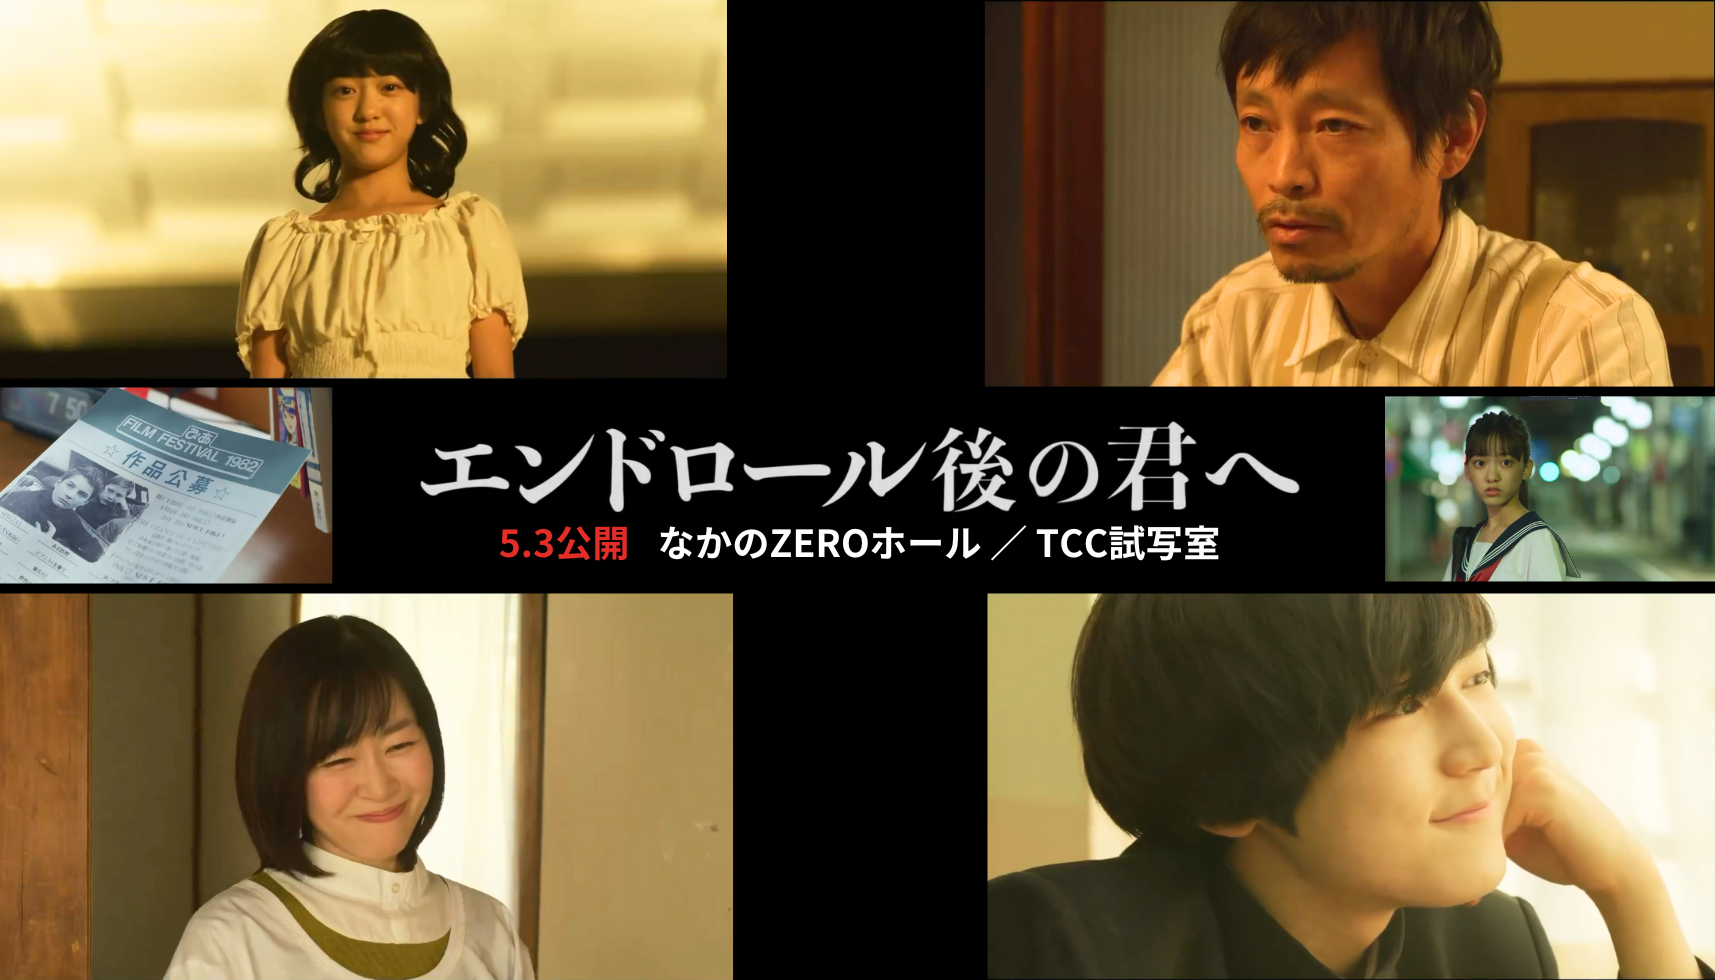 牧村柚和が出演している映画「エンドロール後の君へ」の再上映が決定しました